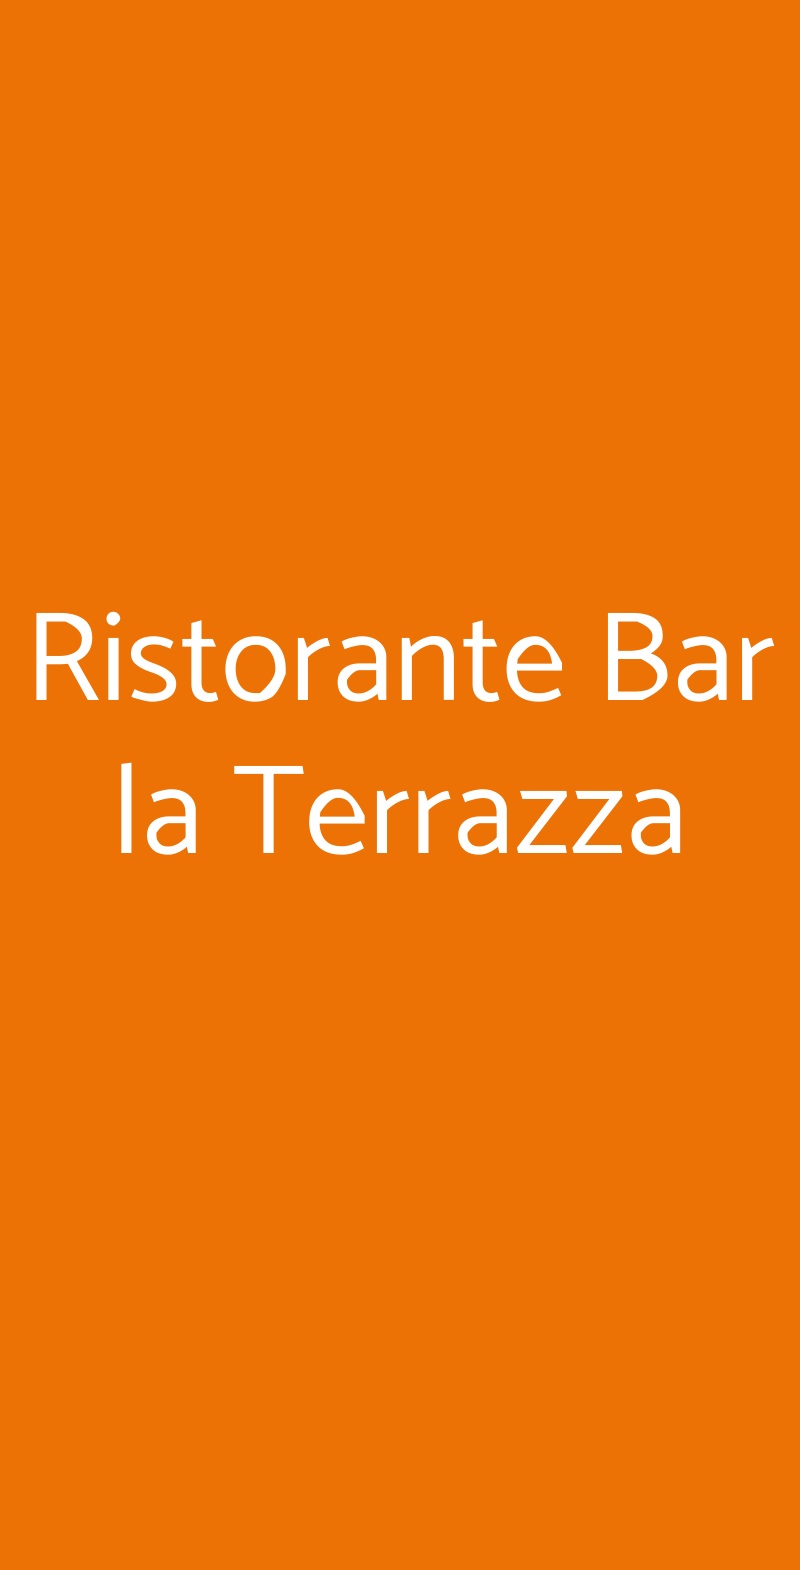 Ristorante Bar la Terrazza Pisa menù 1 pagina